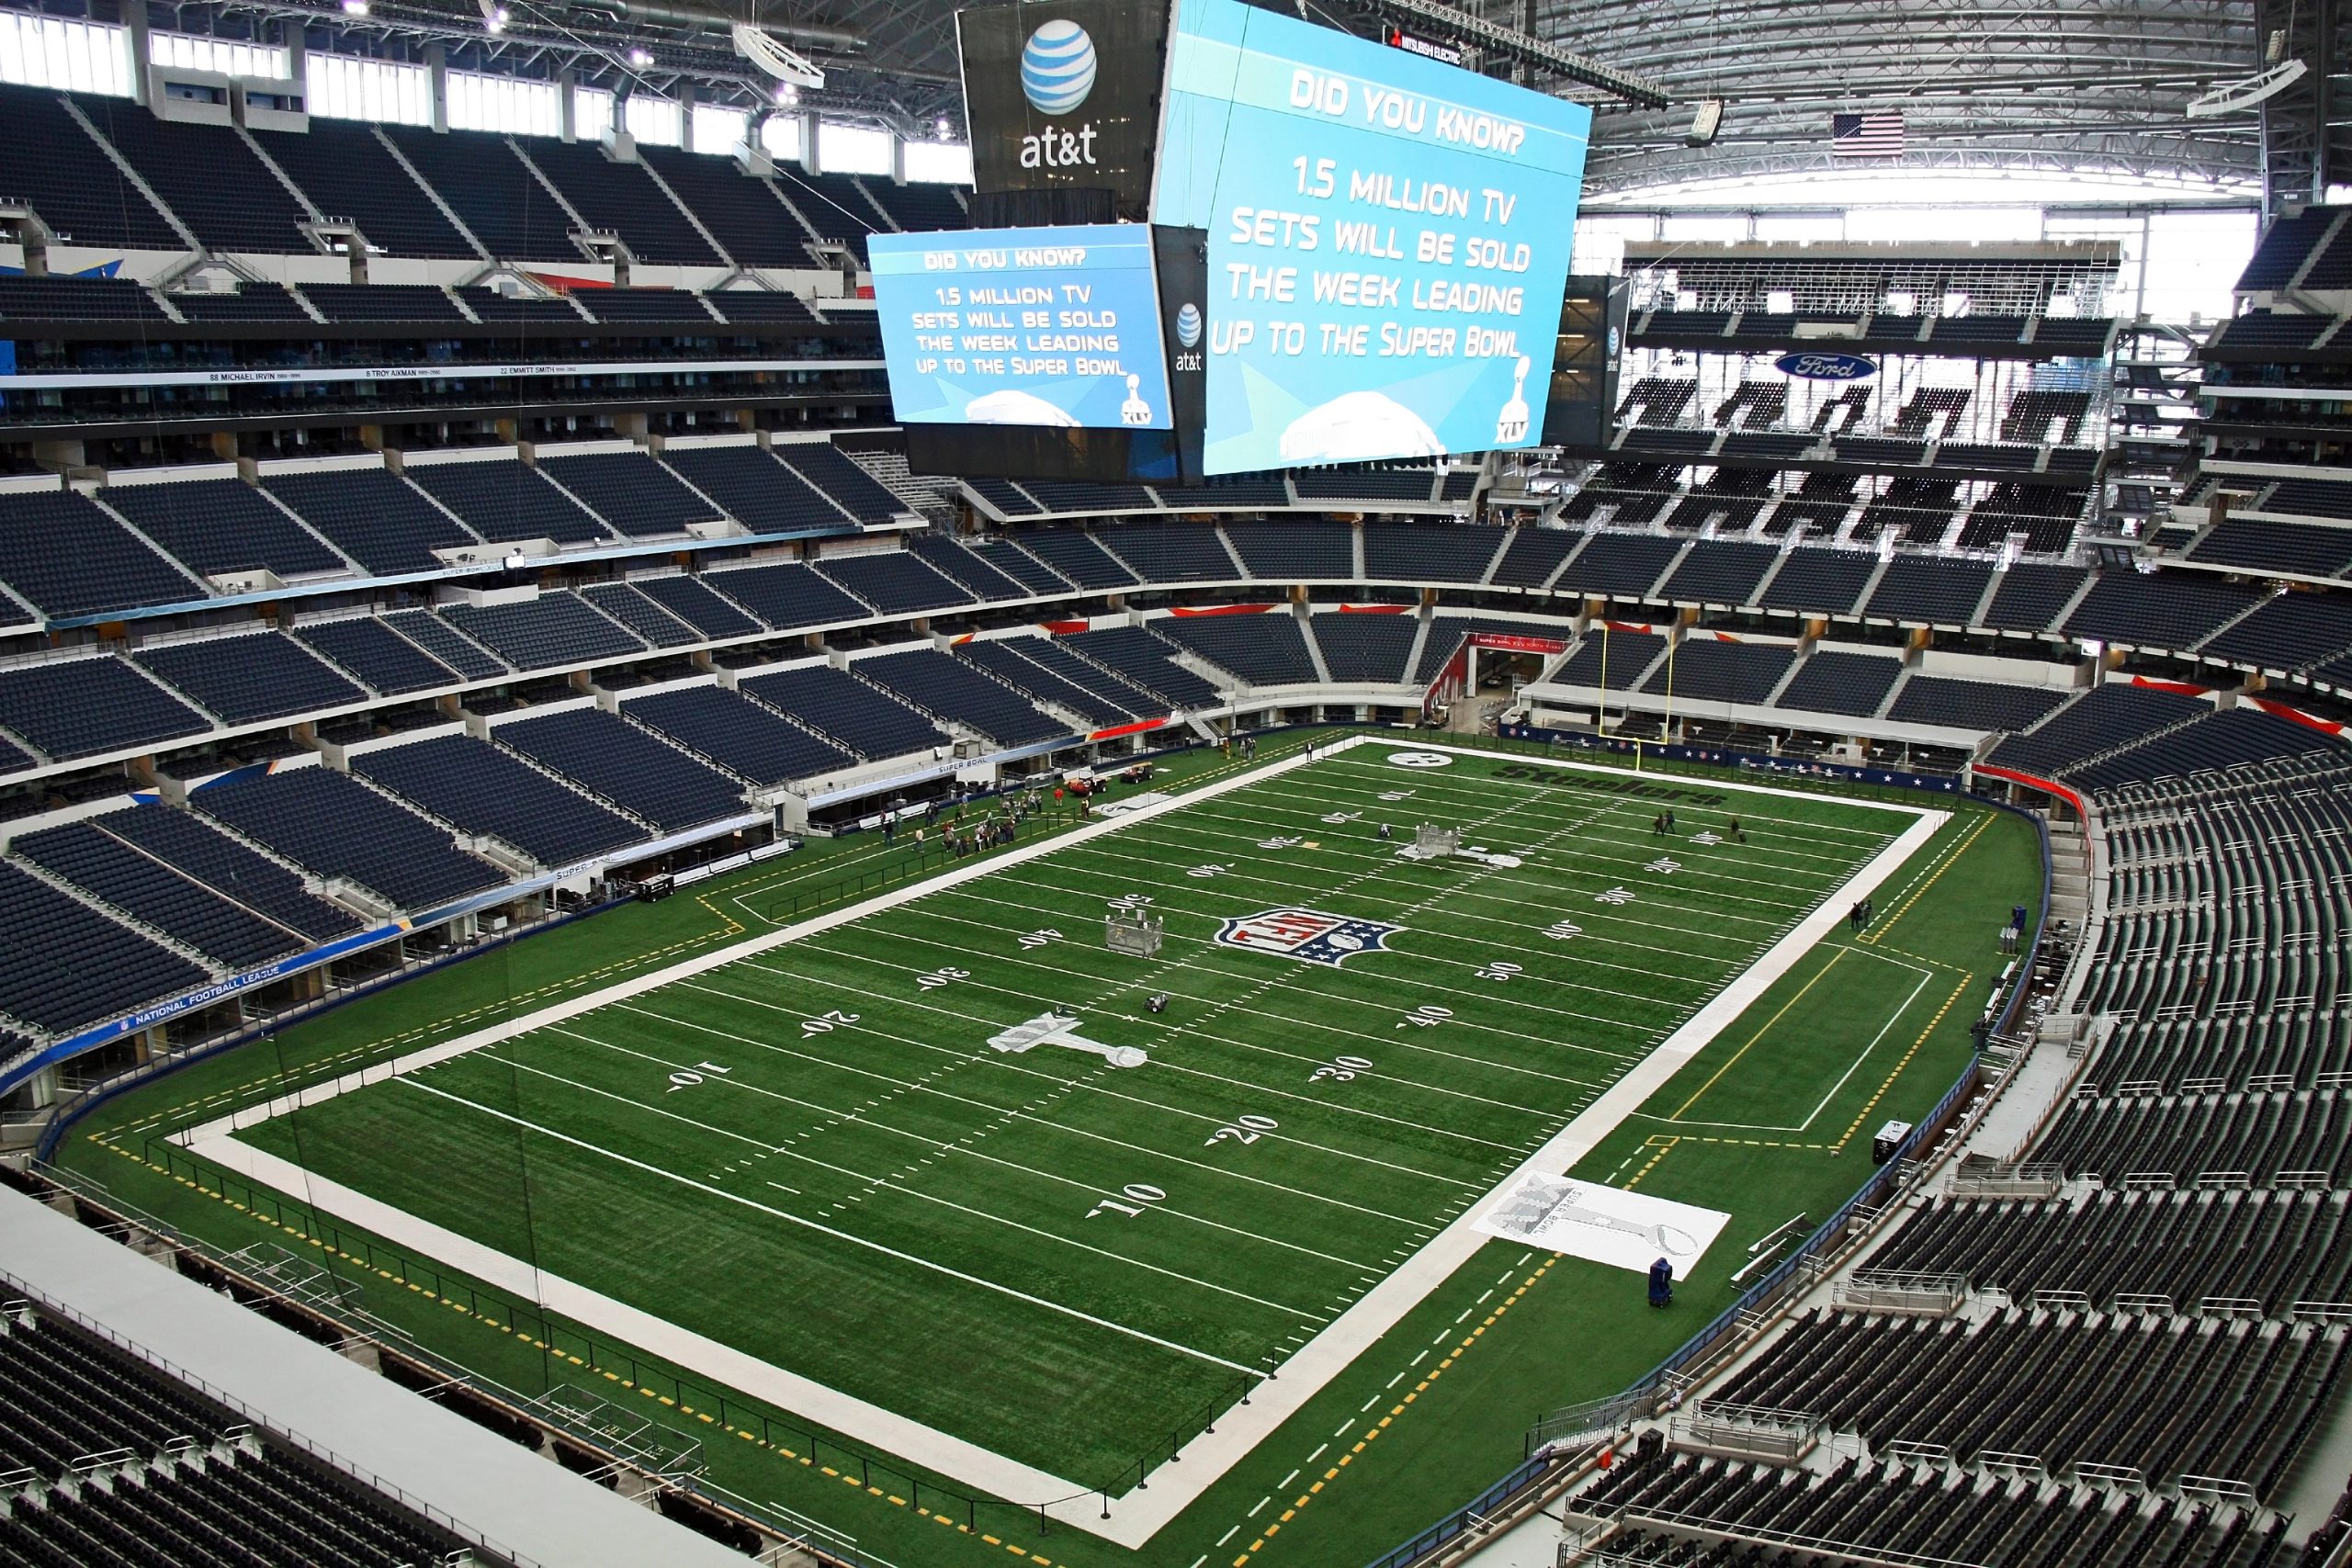 FootballR - NFL - Diese Beschreibung wurde automatisch generiert. Ein leeres Stadion mit einem Footballfeld in der Mitte, das normalerweise mit NFL-Teams und Besuchern gefüllt ist.